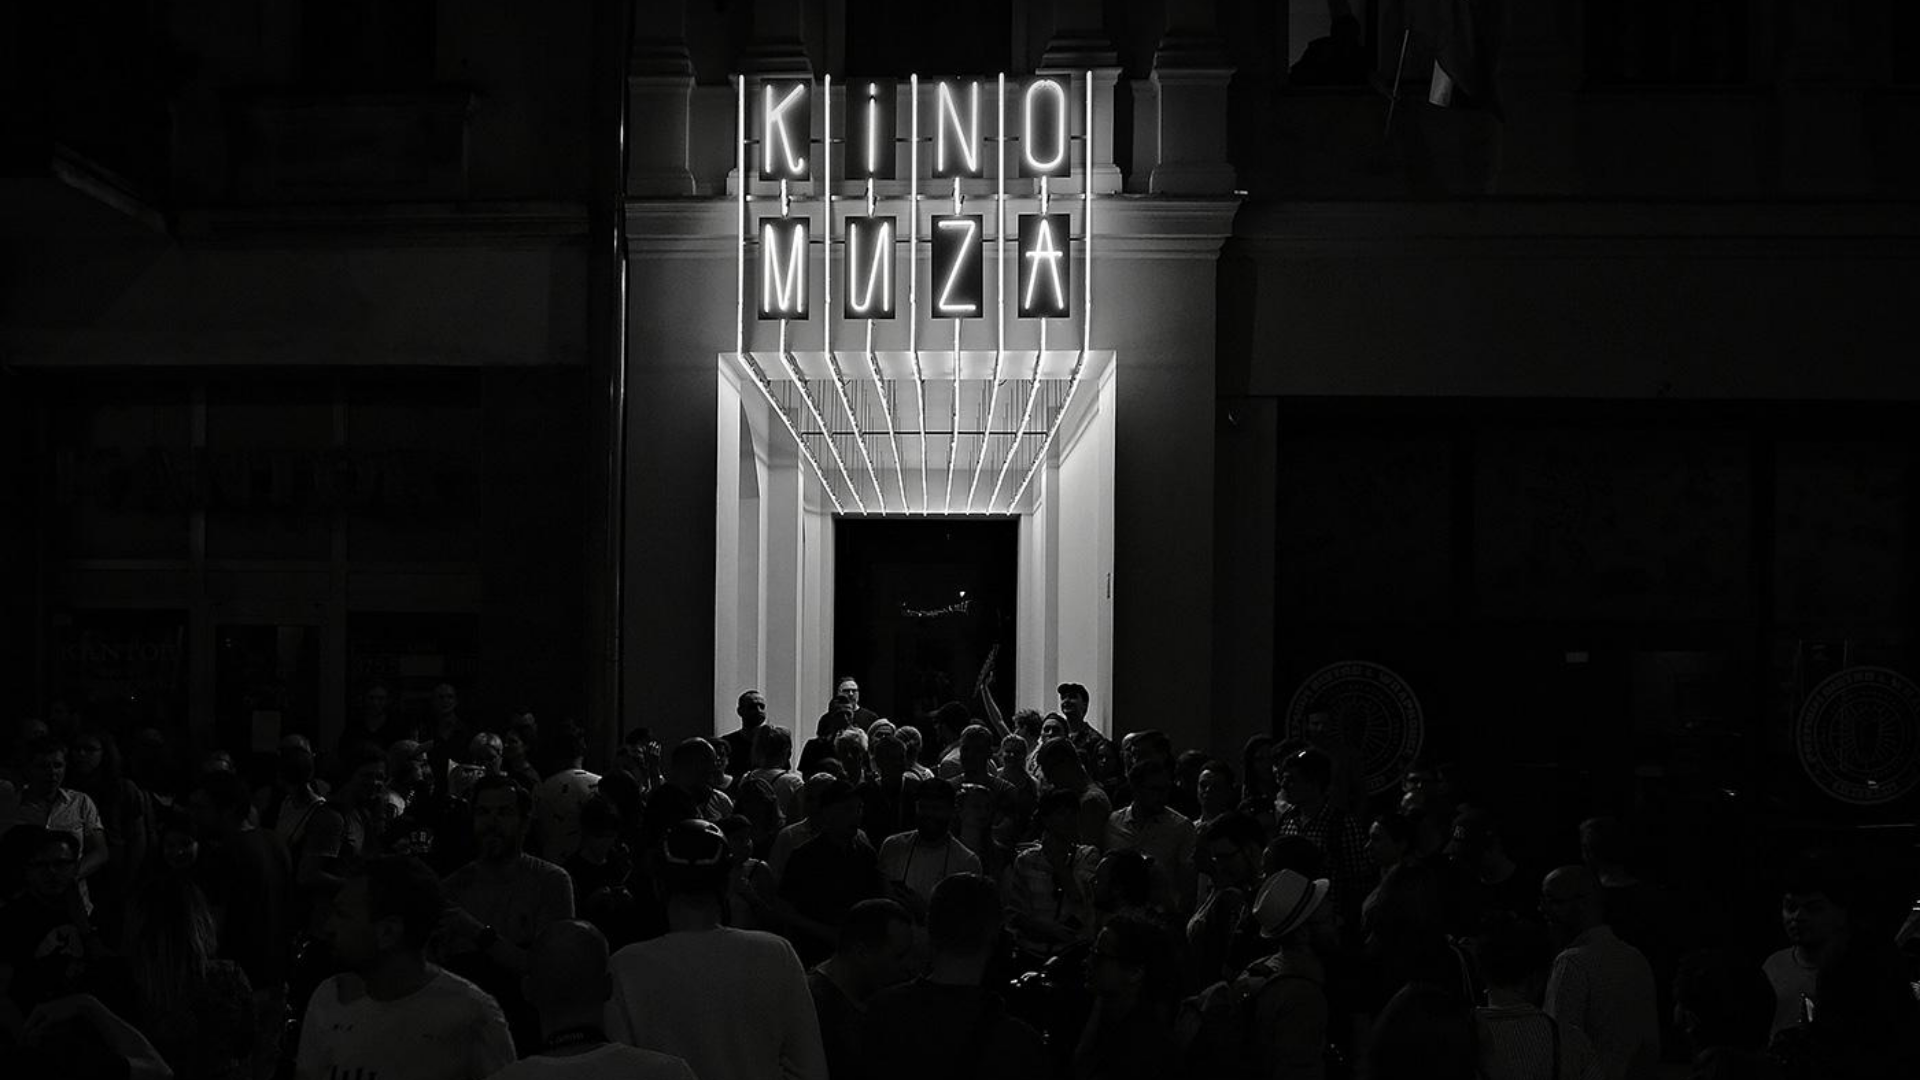 Ciemna fotofrafia przedstawia tłum przy wejściu do kina, nad wejściem świecący neon KINO MUZA.